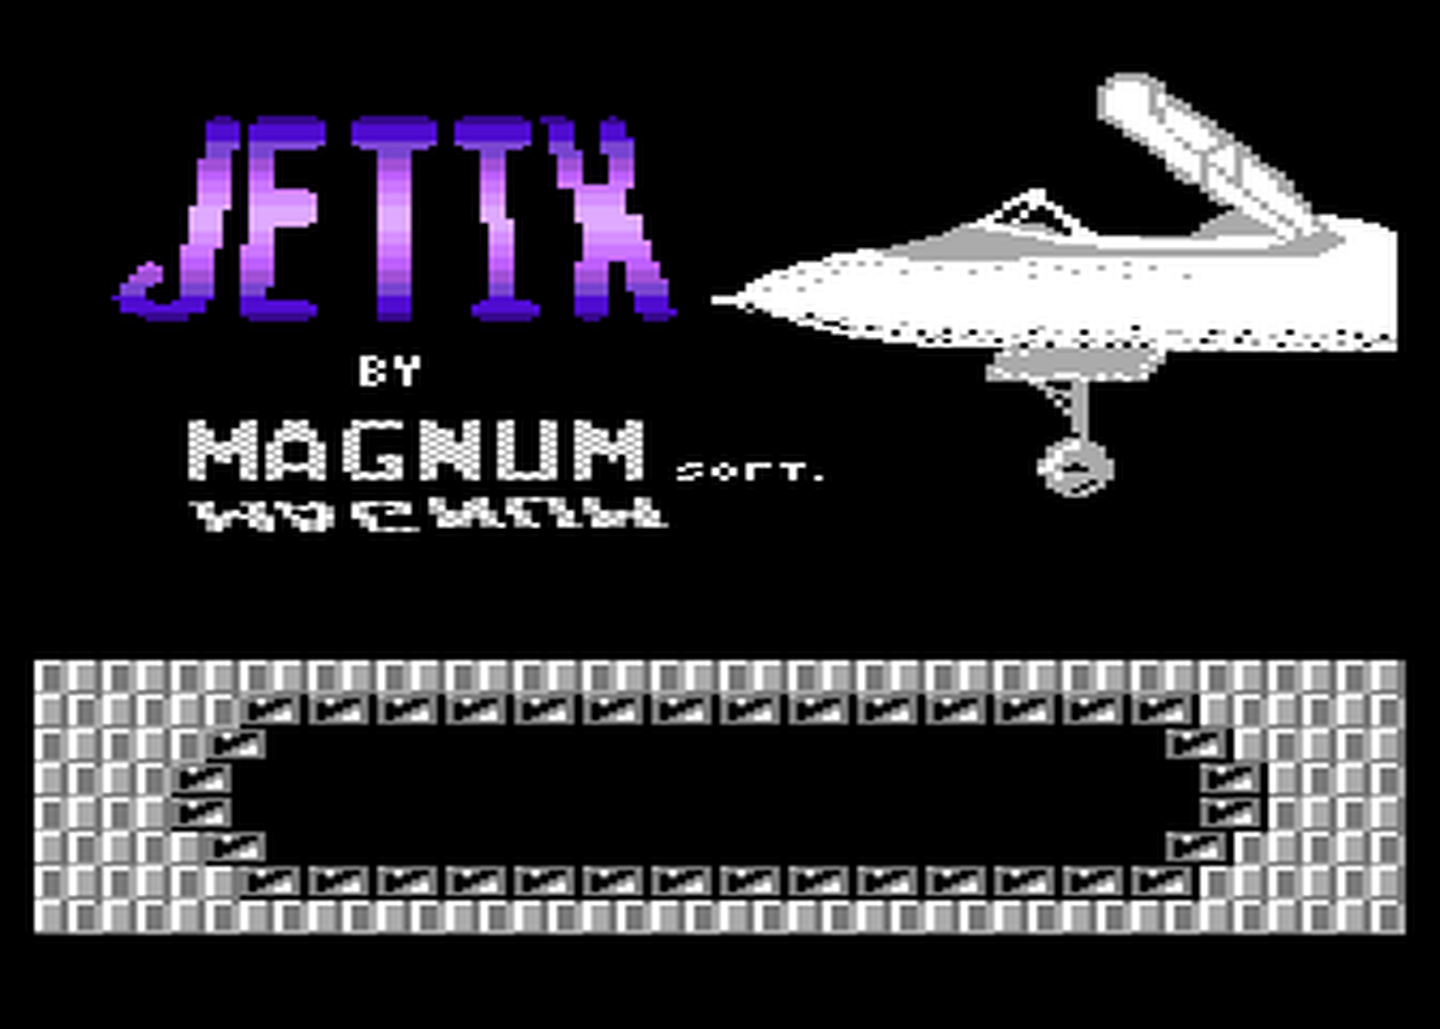 Atari GameBase Jetix Magnum_Soft